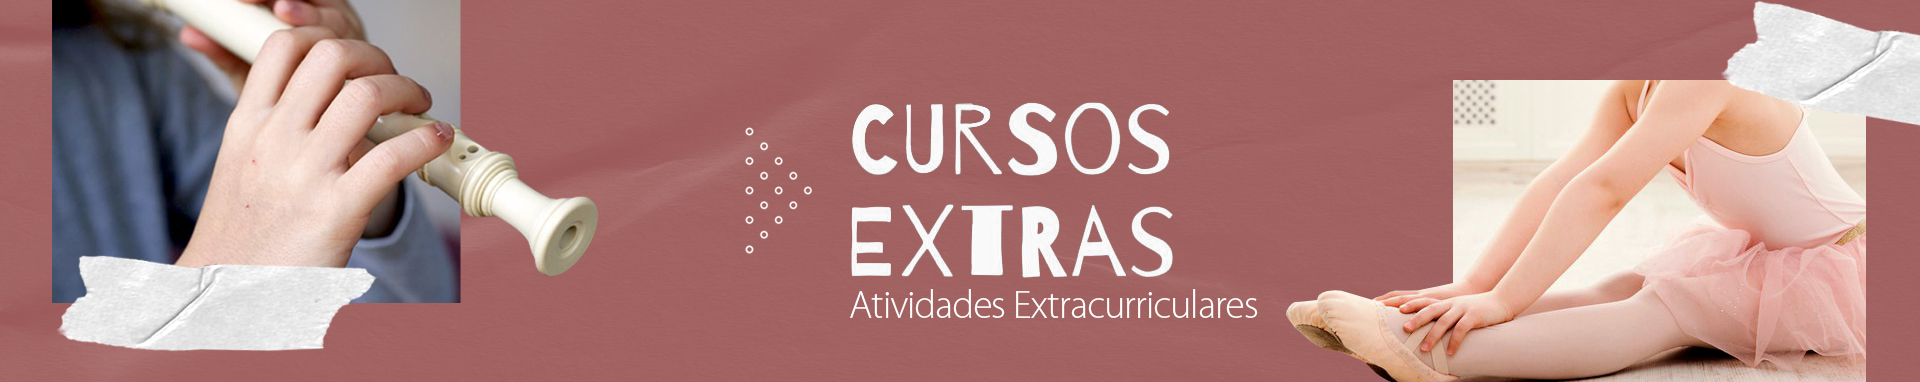 Capa_site_Cursos Extras